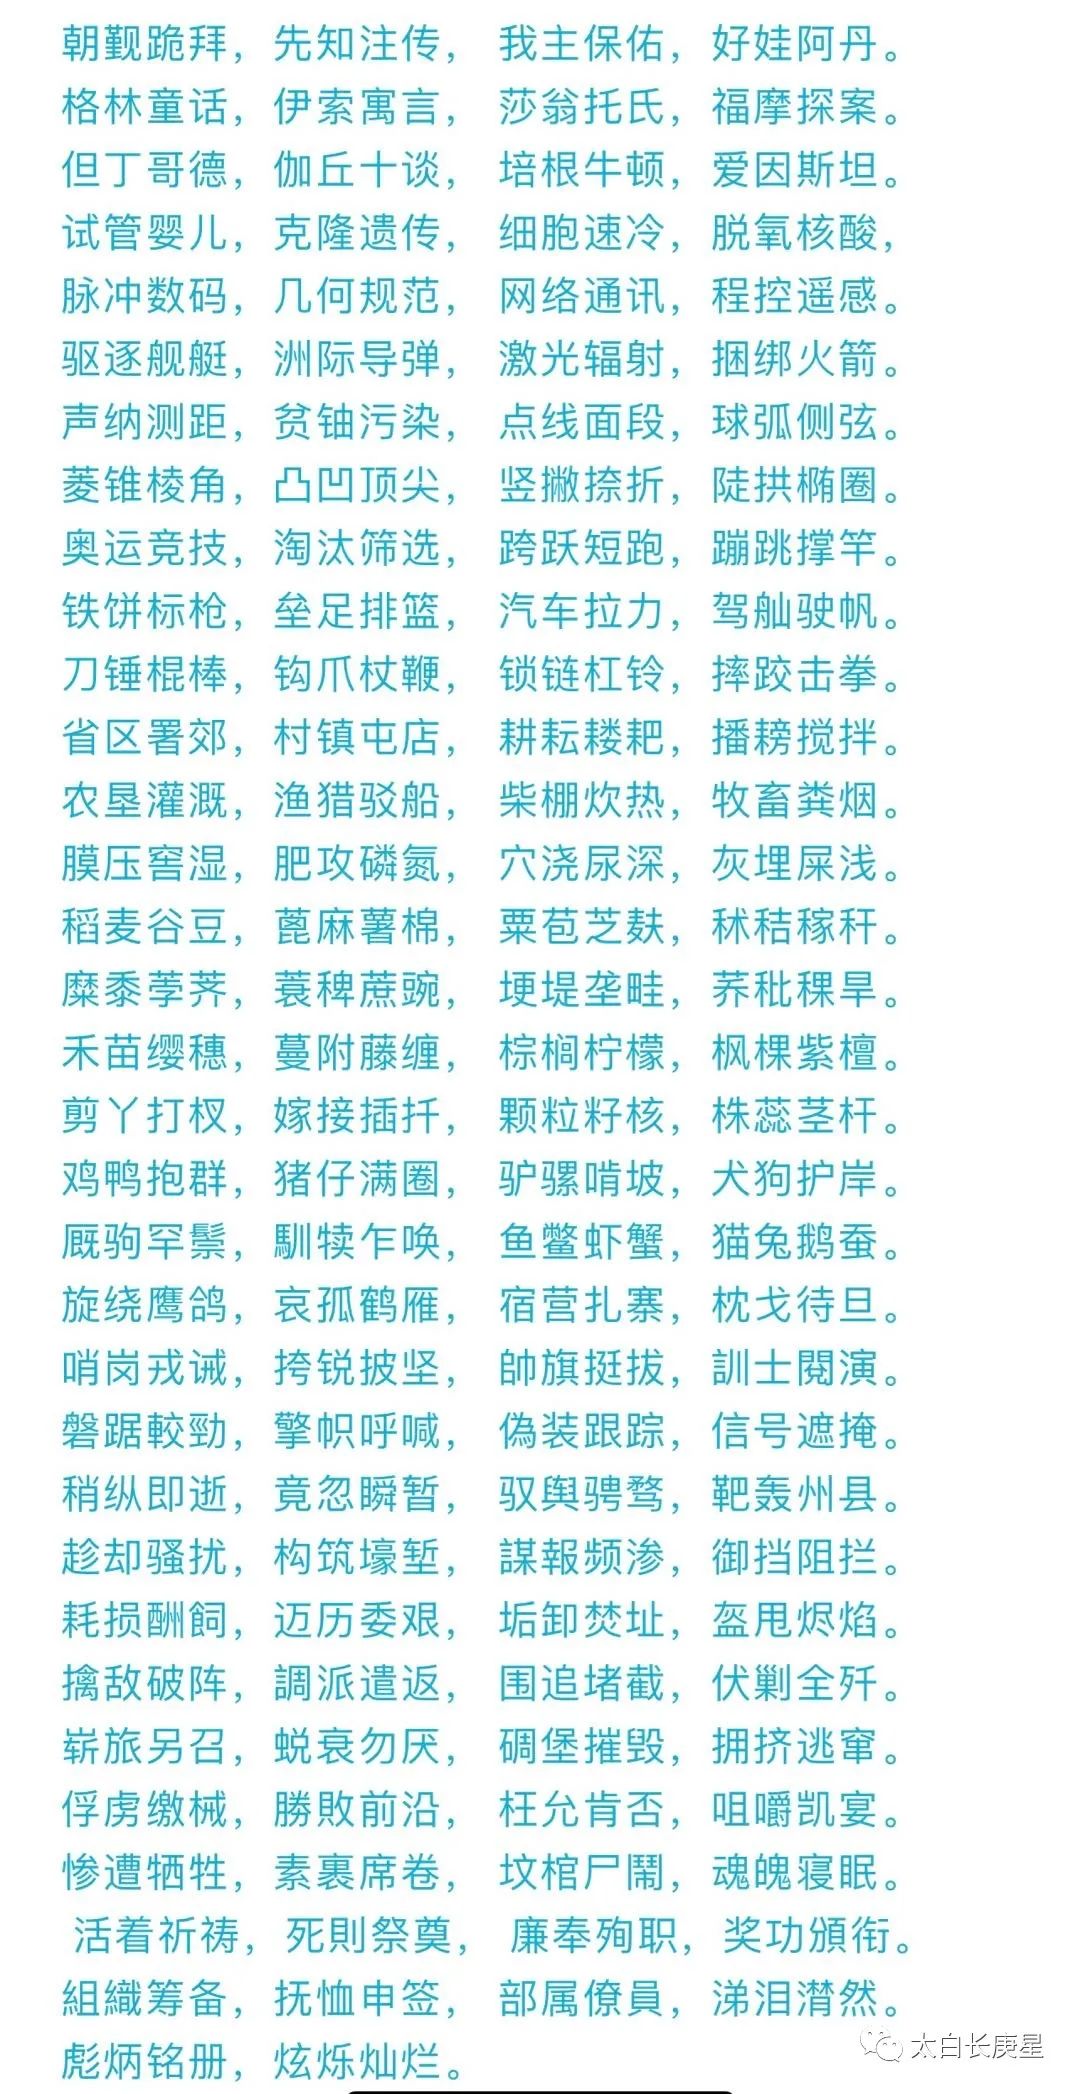 中華字經 絕文 4000汉字无一重复 全网搜